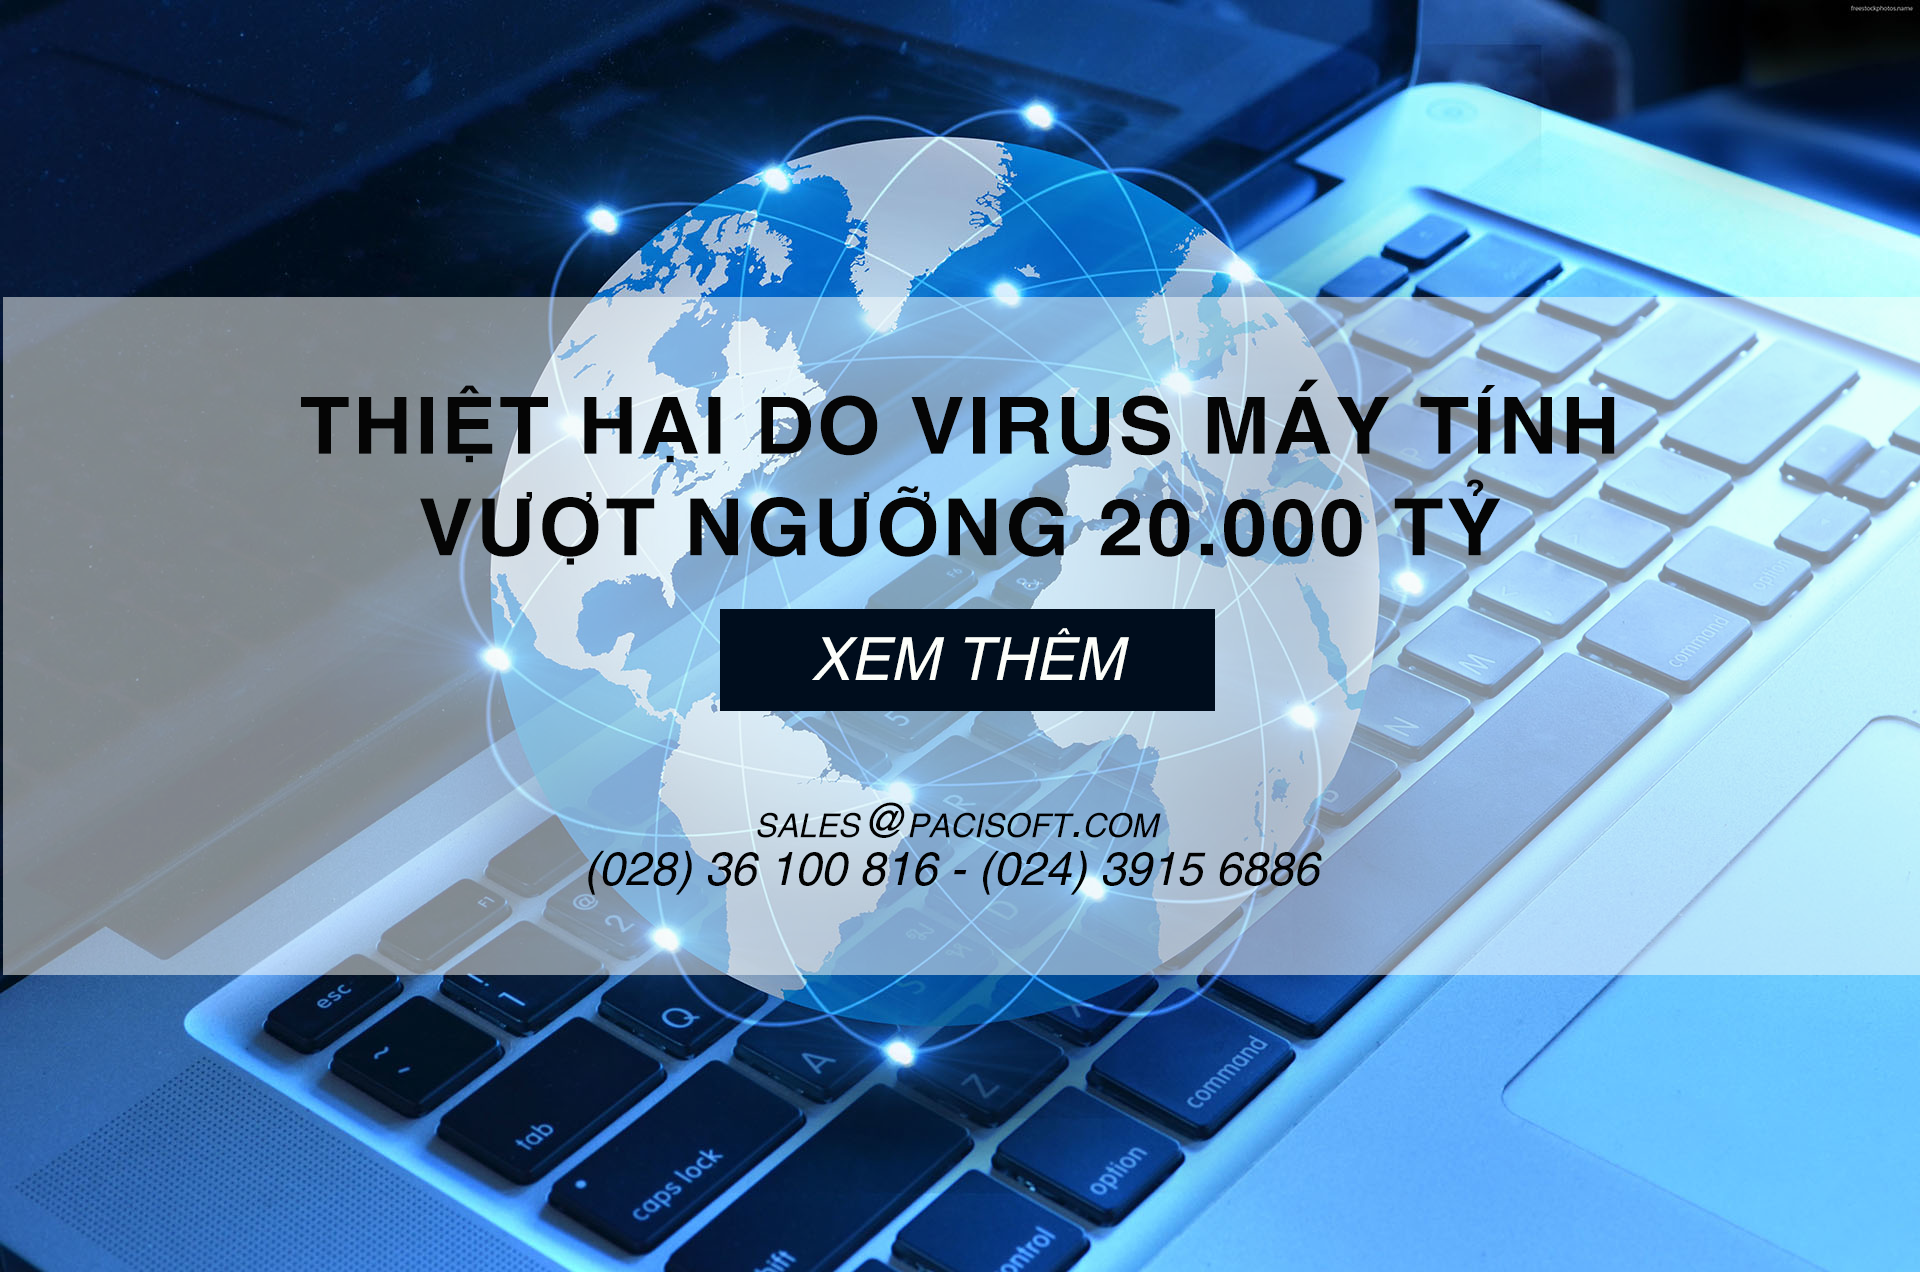 Thiệt hại do Virus máy tính vượt ngưỡng 20.000 tỷ năm 2019